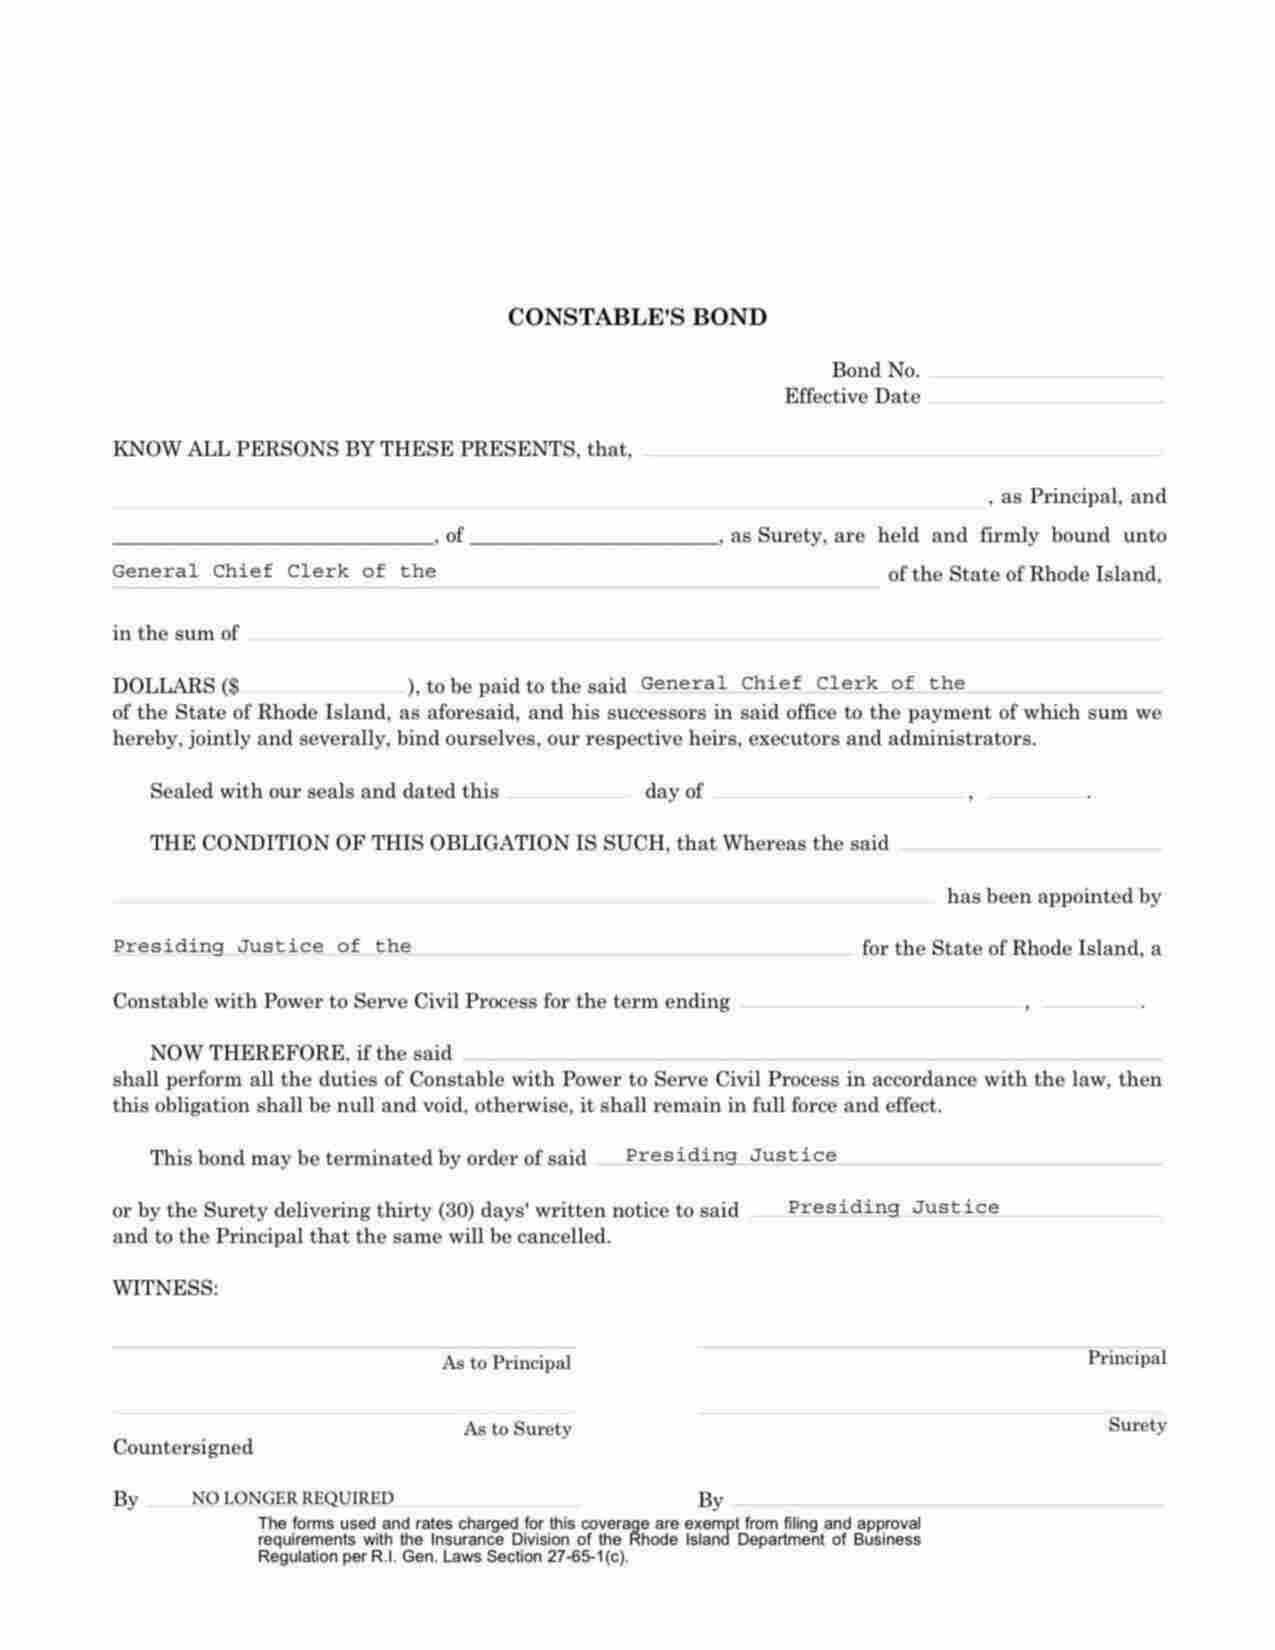 Rhode Island Constable Bond Form